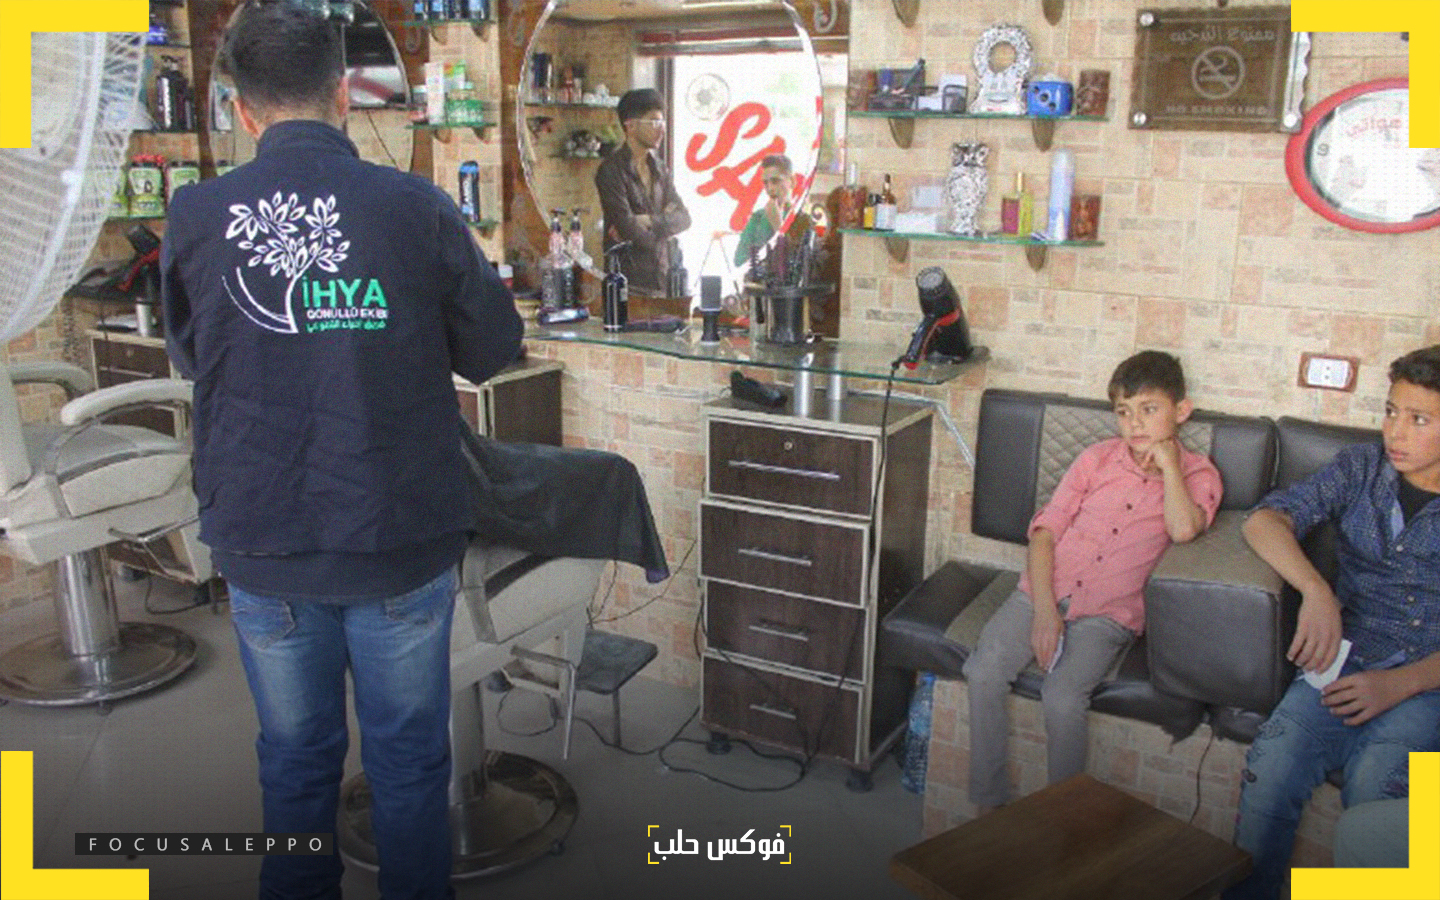 حلاقة العيد للأطفال في مدينة ادلب ضمن حملة "بدنا نعيّد" التي أطلقها فريق احياء التطوعي